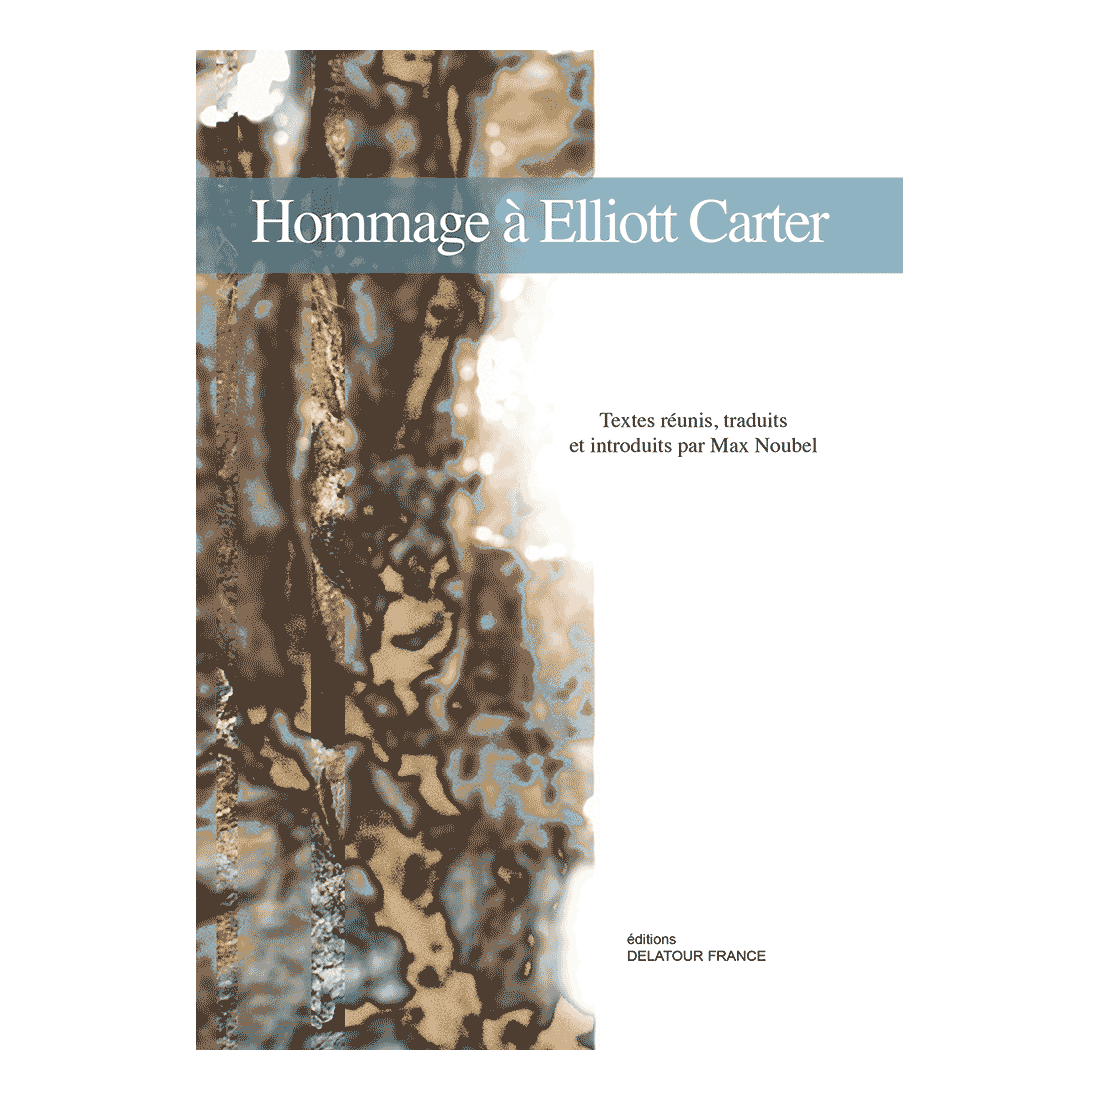 Tribute to Elliott Carter